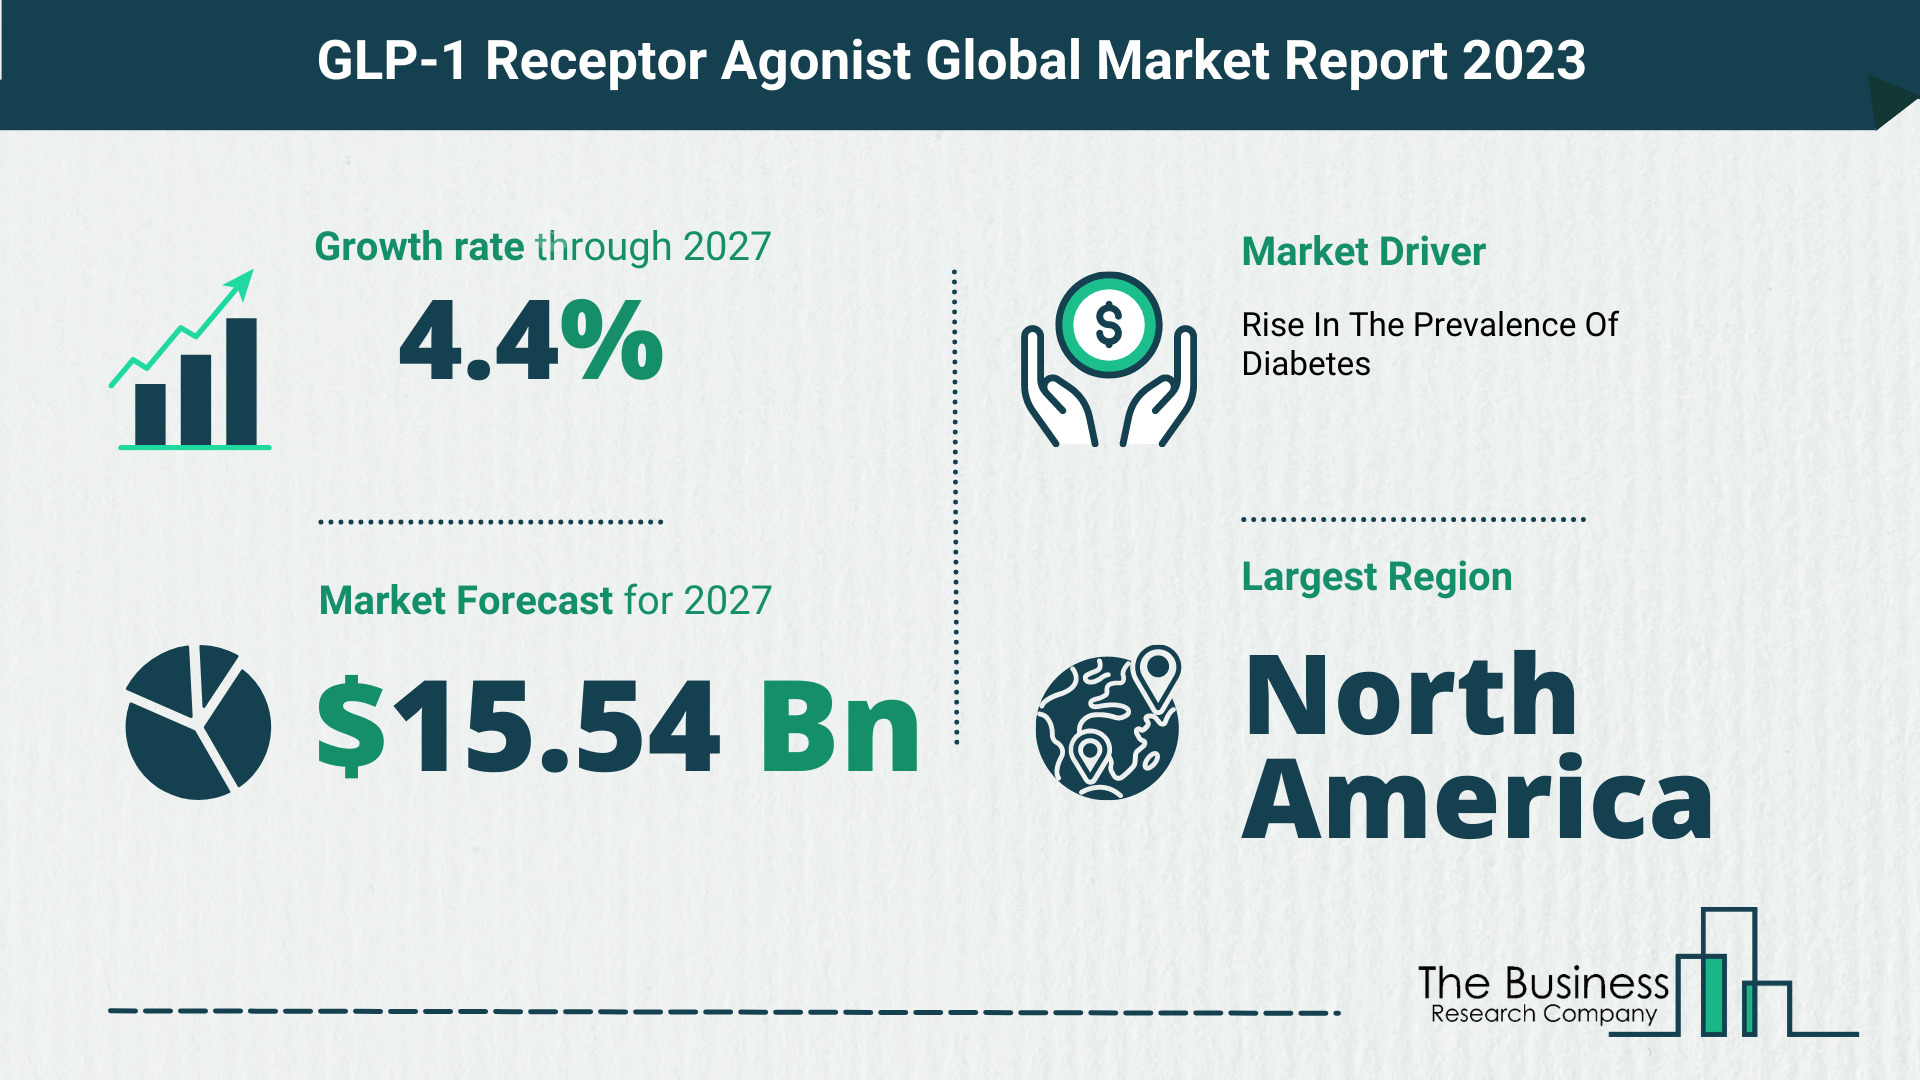 Global GLP-1 Receptor Agonist Market